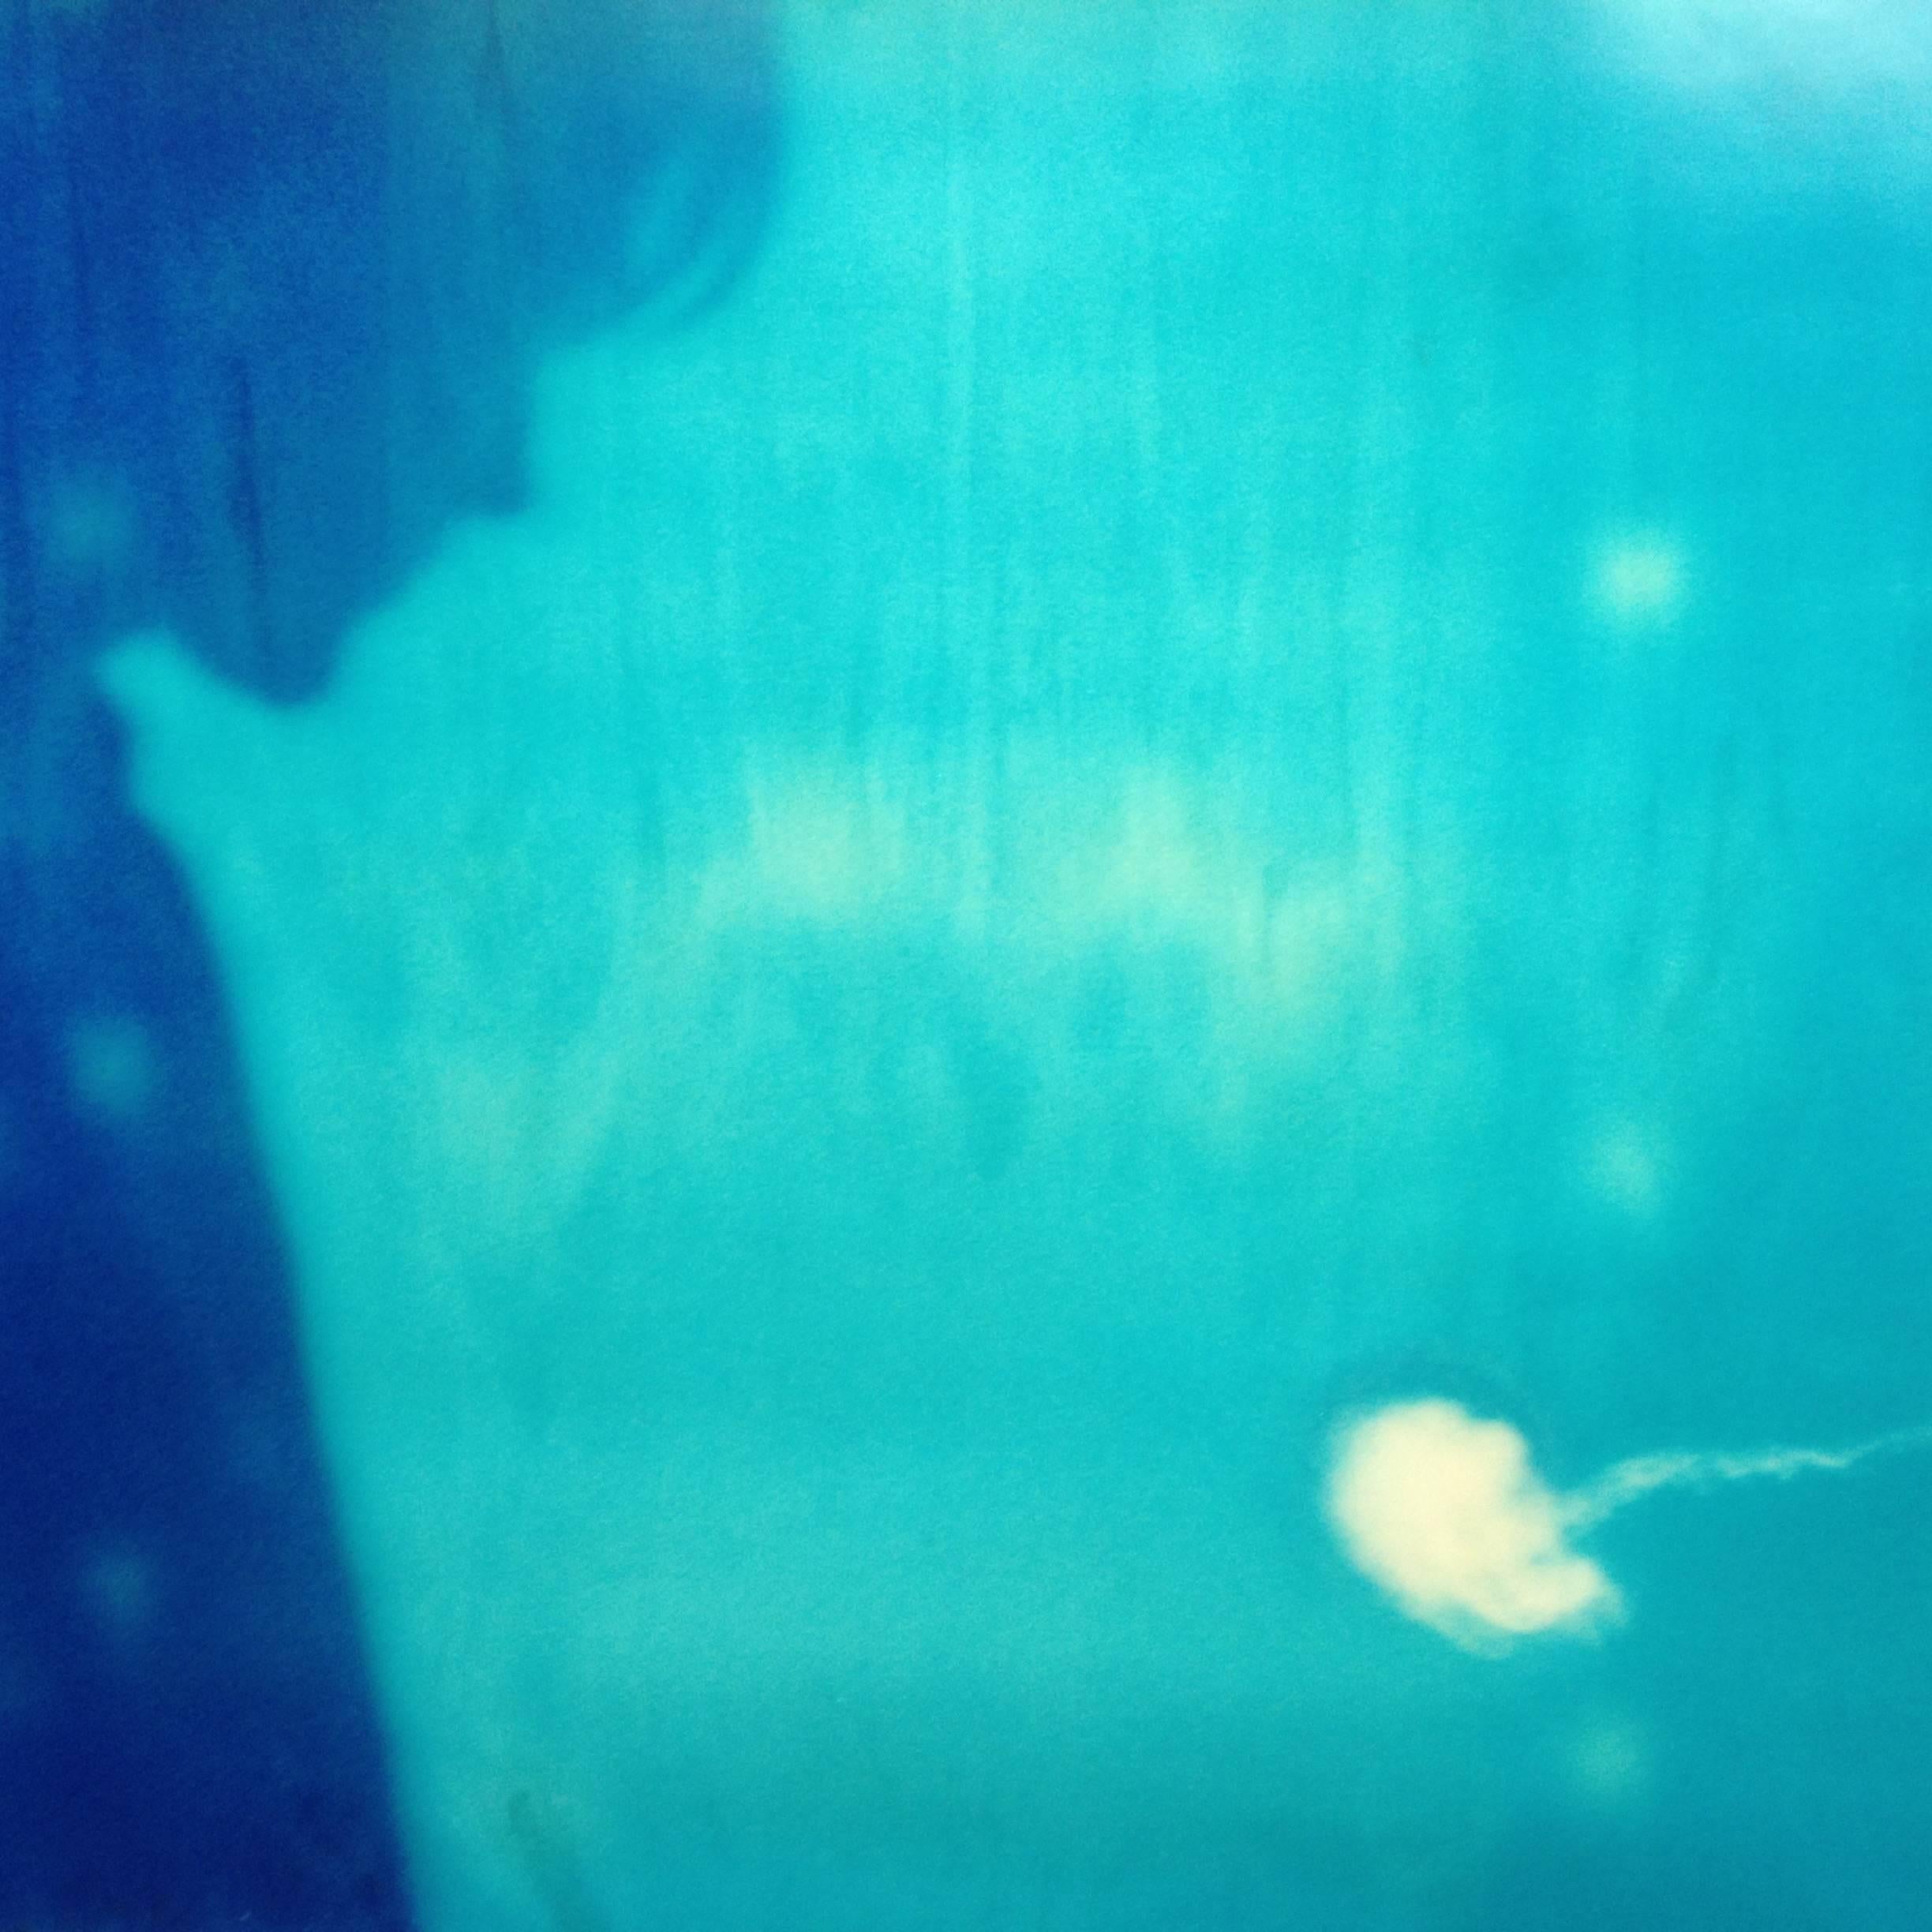 Stefanie Schneider Color Photograph – Jelly Fish – Zeitgenössisch, abgelaufen, Polaroid, Fotografie, Abstrakt, Ryan Gosling